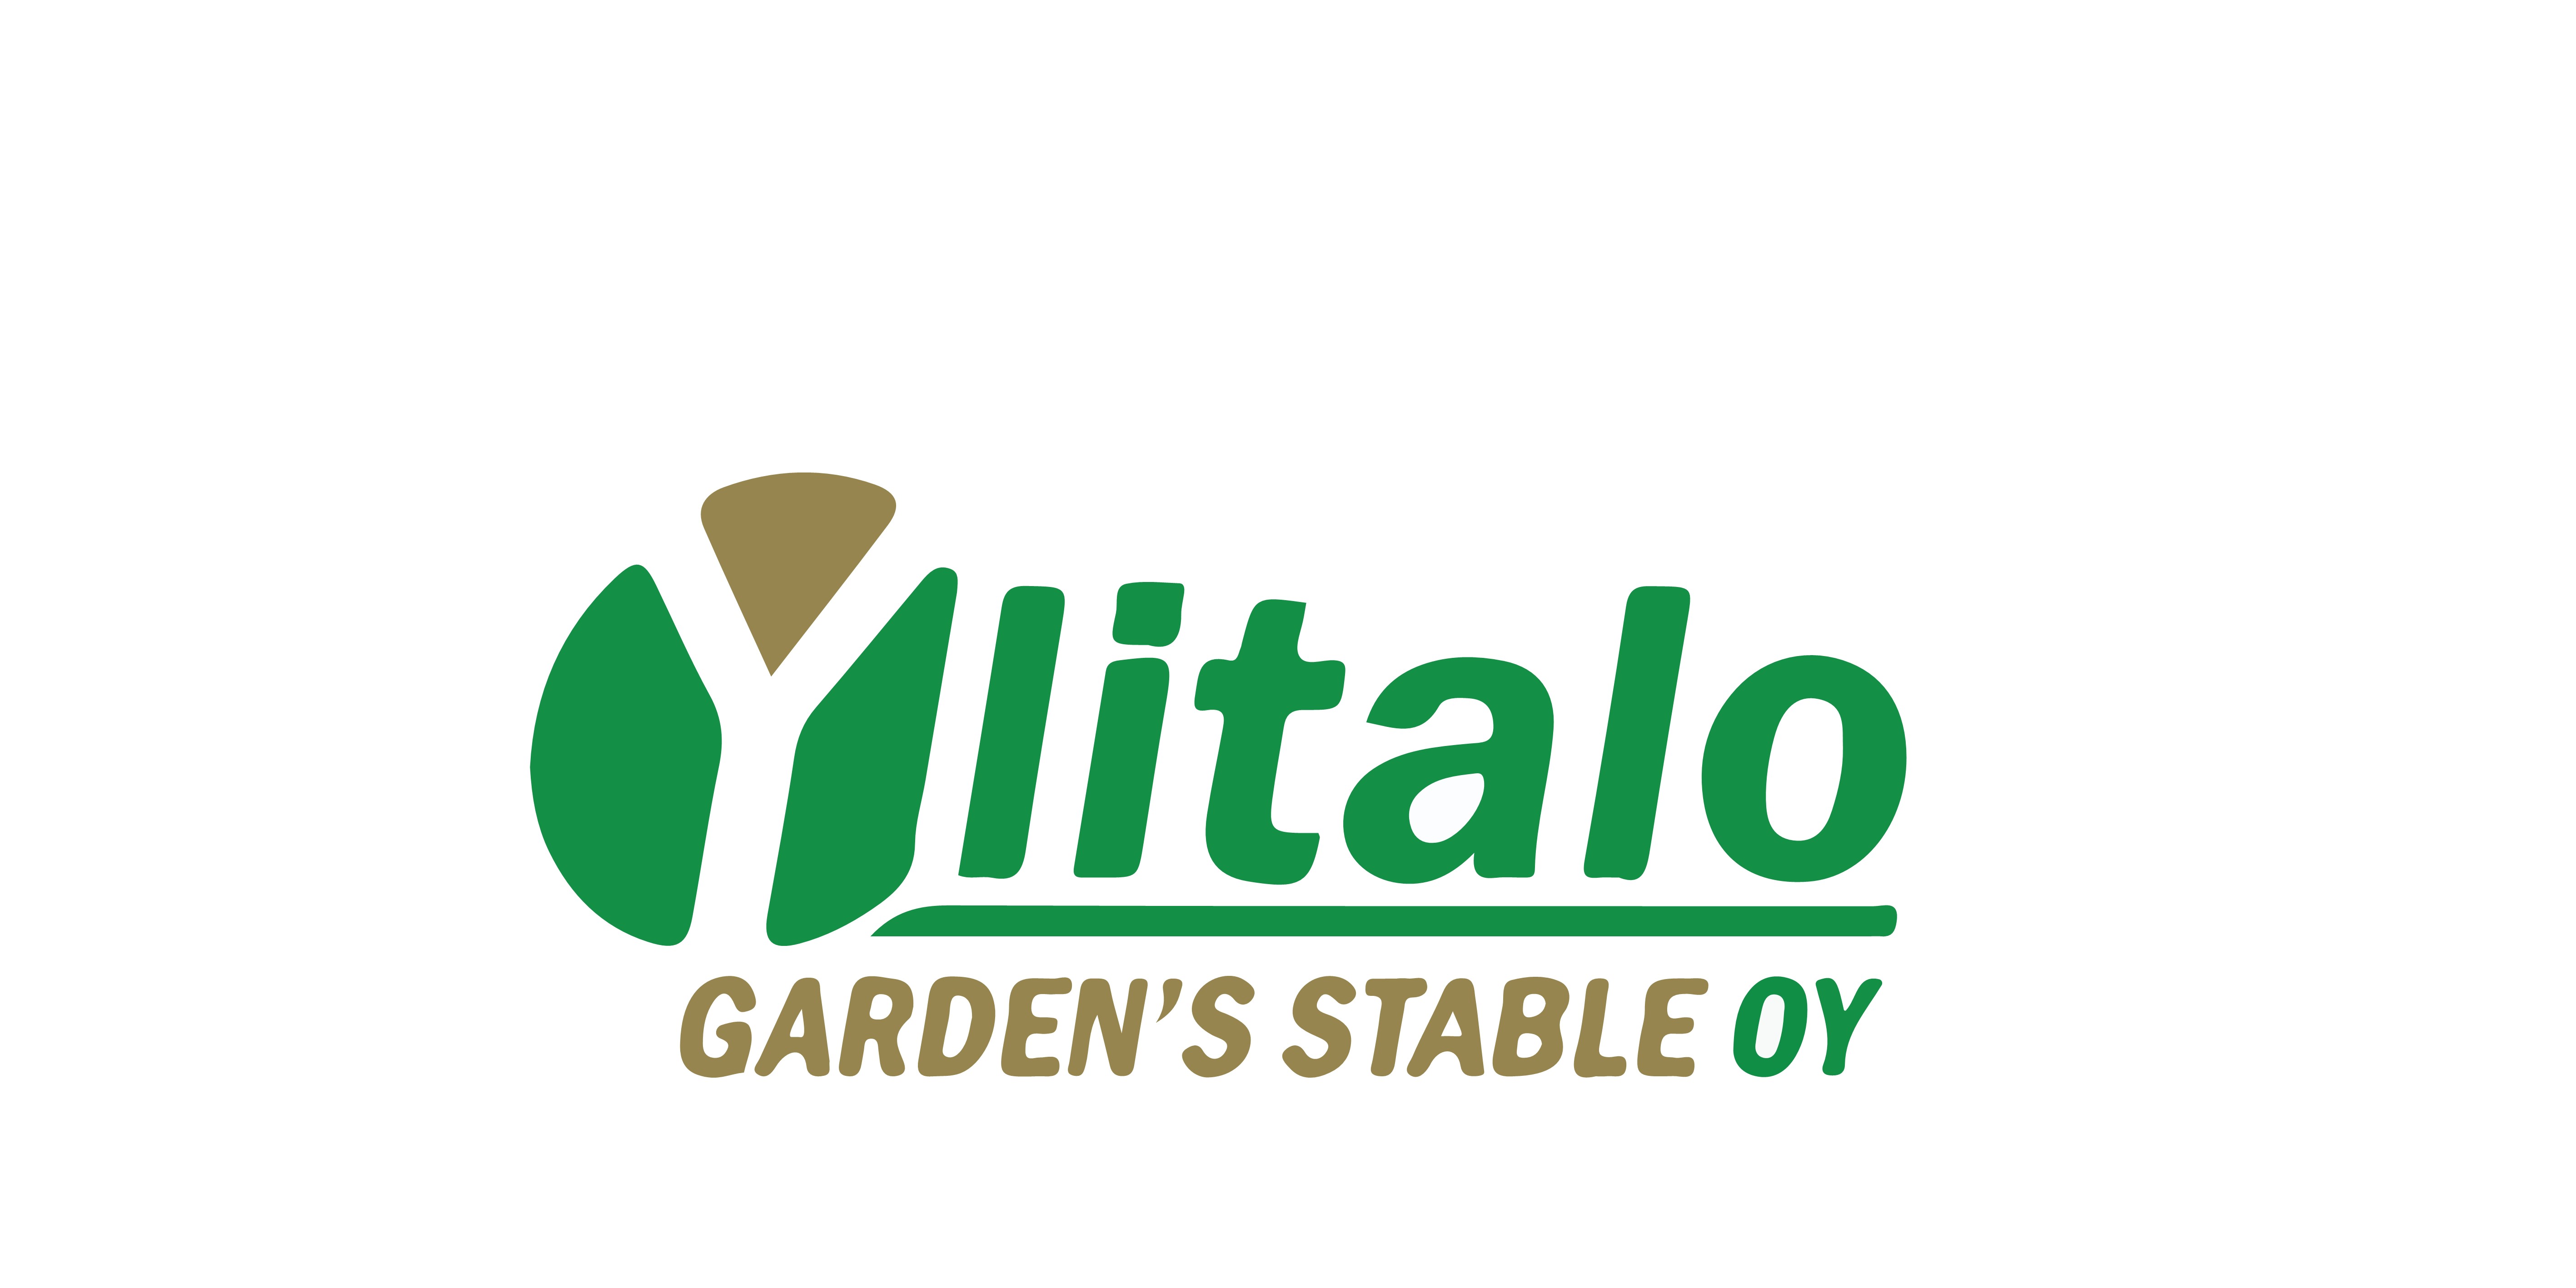 Ylitalo Garden stable